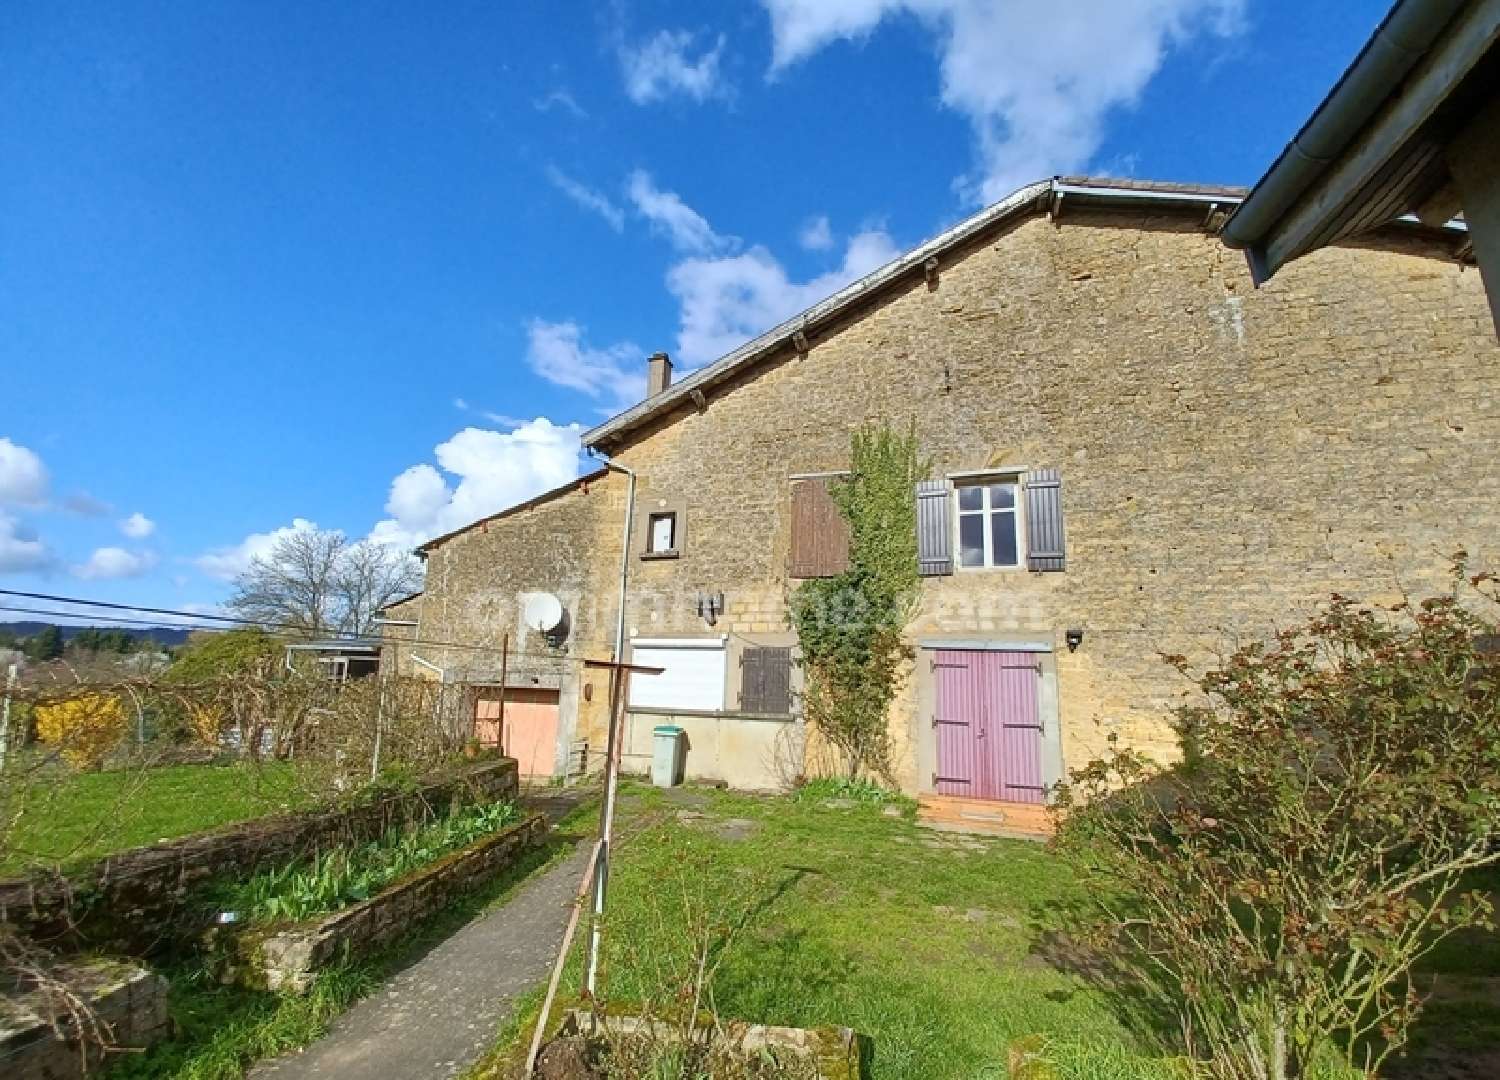  for sale village house Quincy-Landzécourt Meuse 4